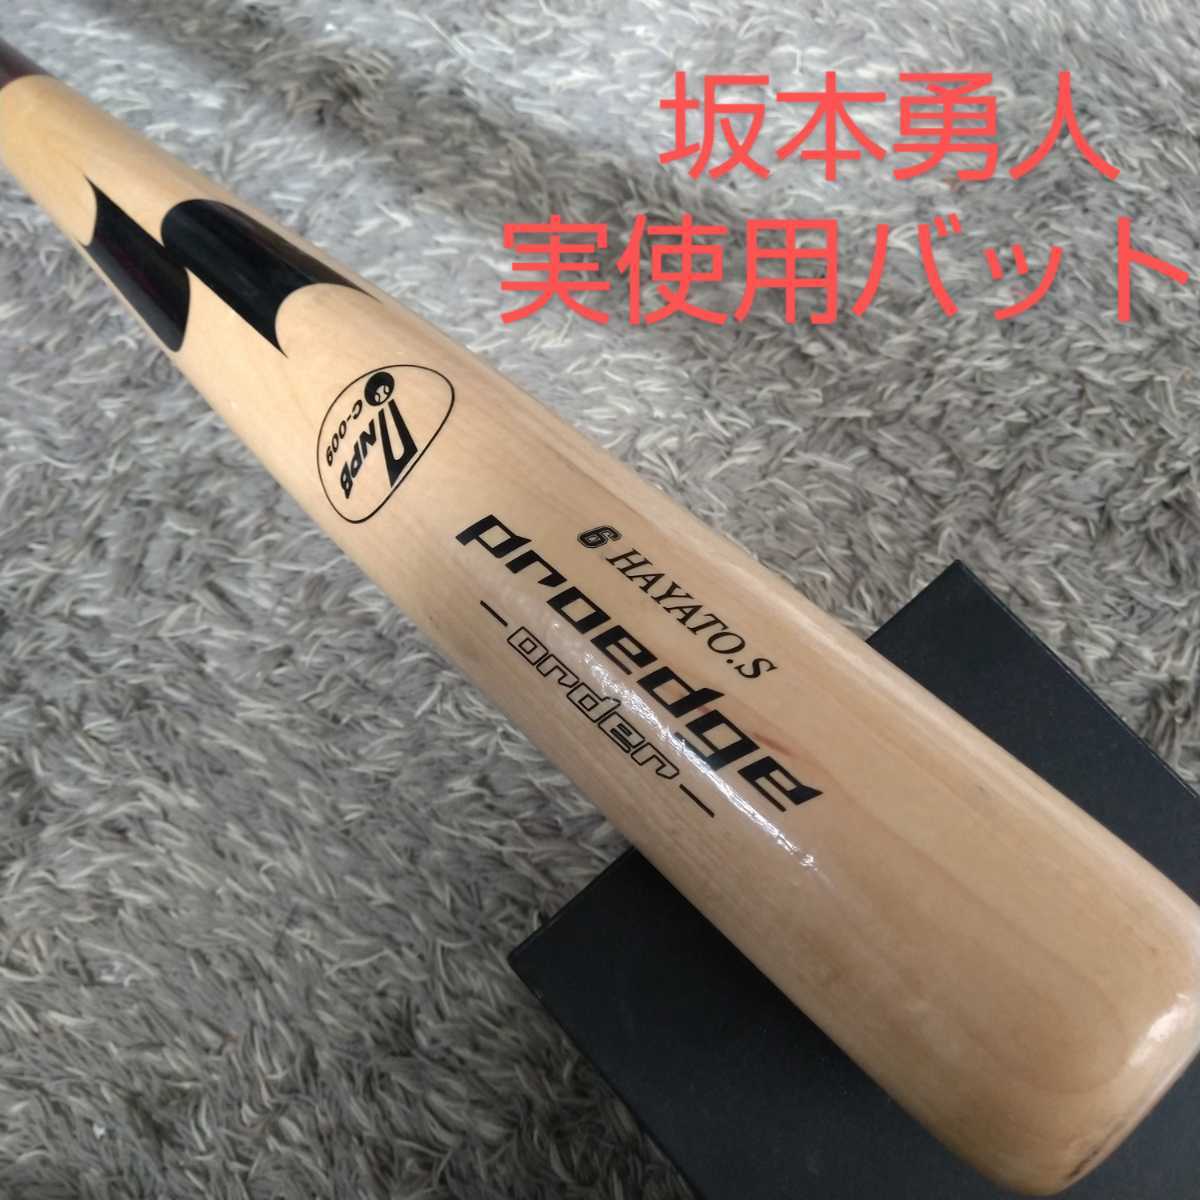 坂本勇人 実使用バット 選手支給品 巨人 読売ジャイアンツ スポーツ 